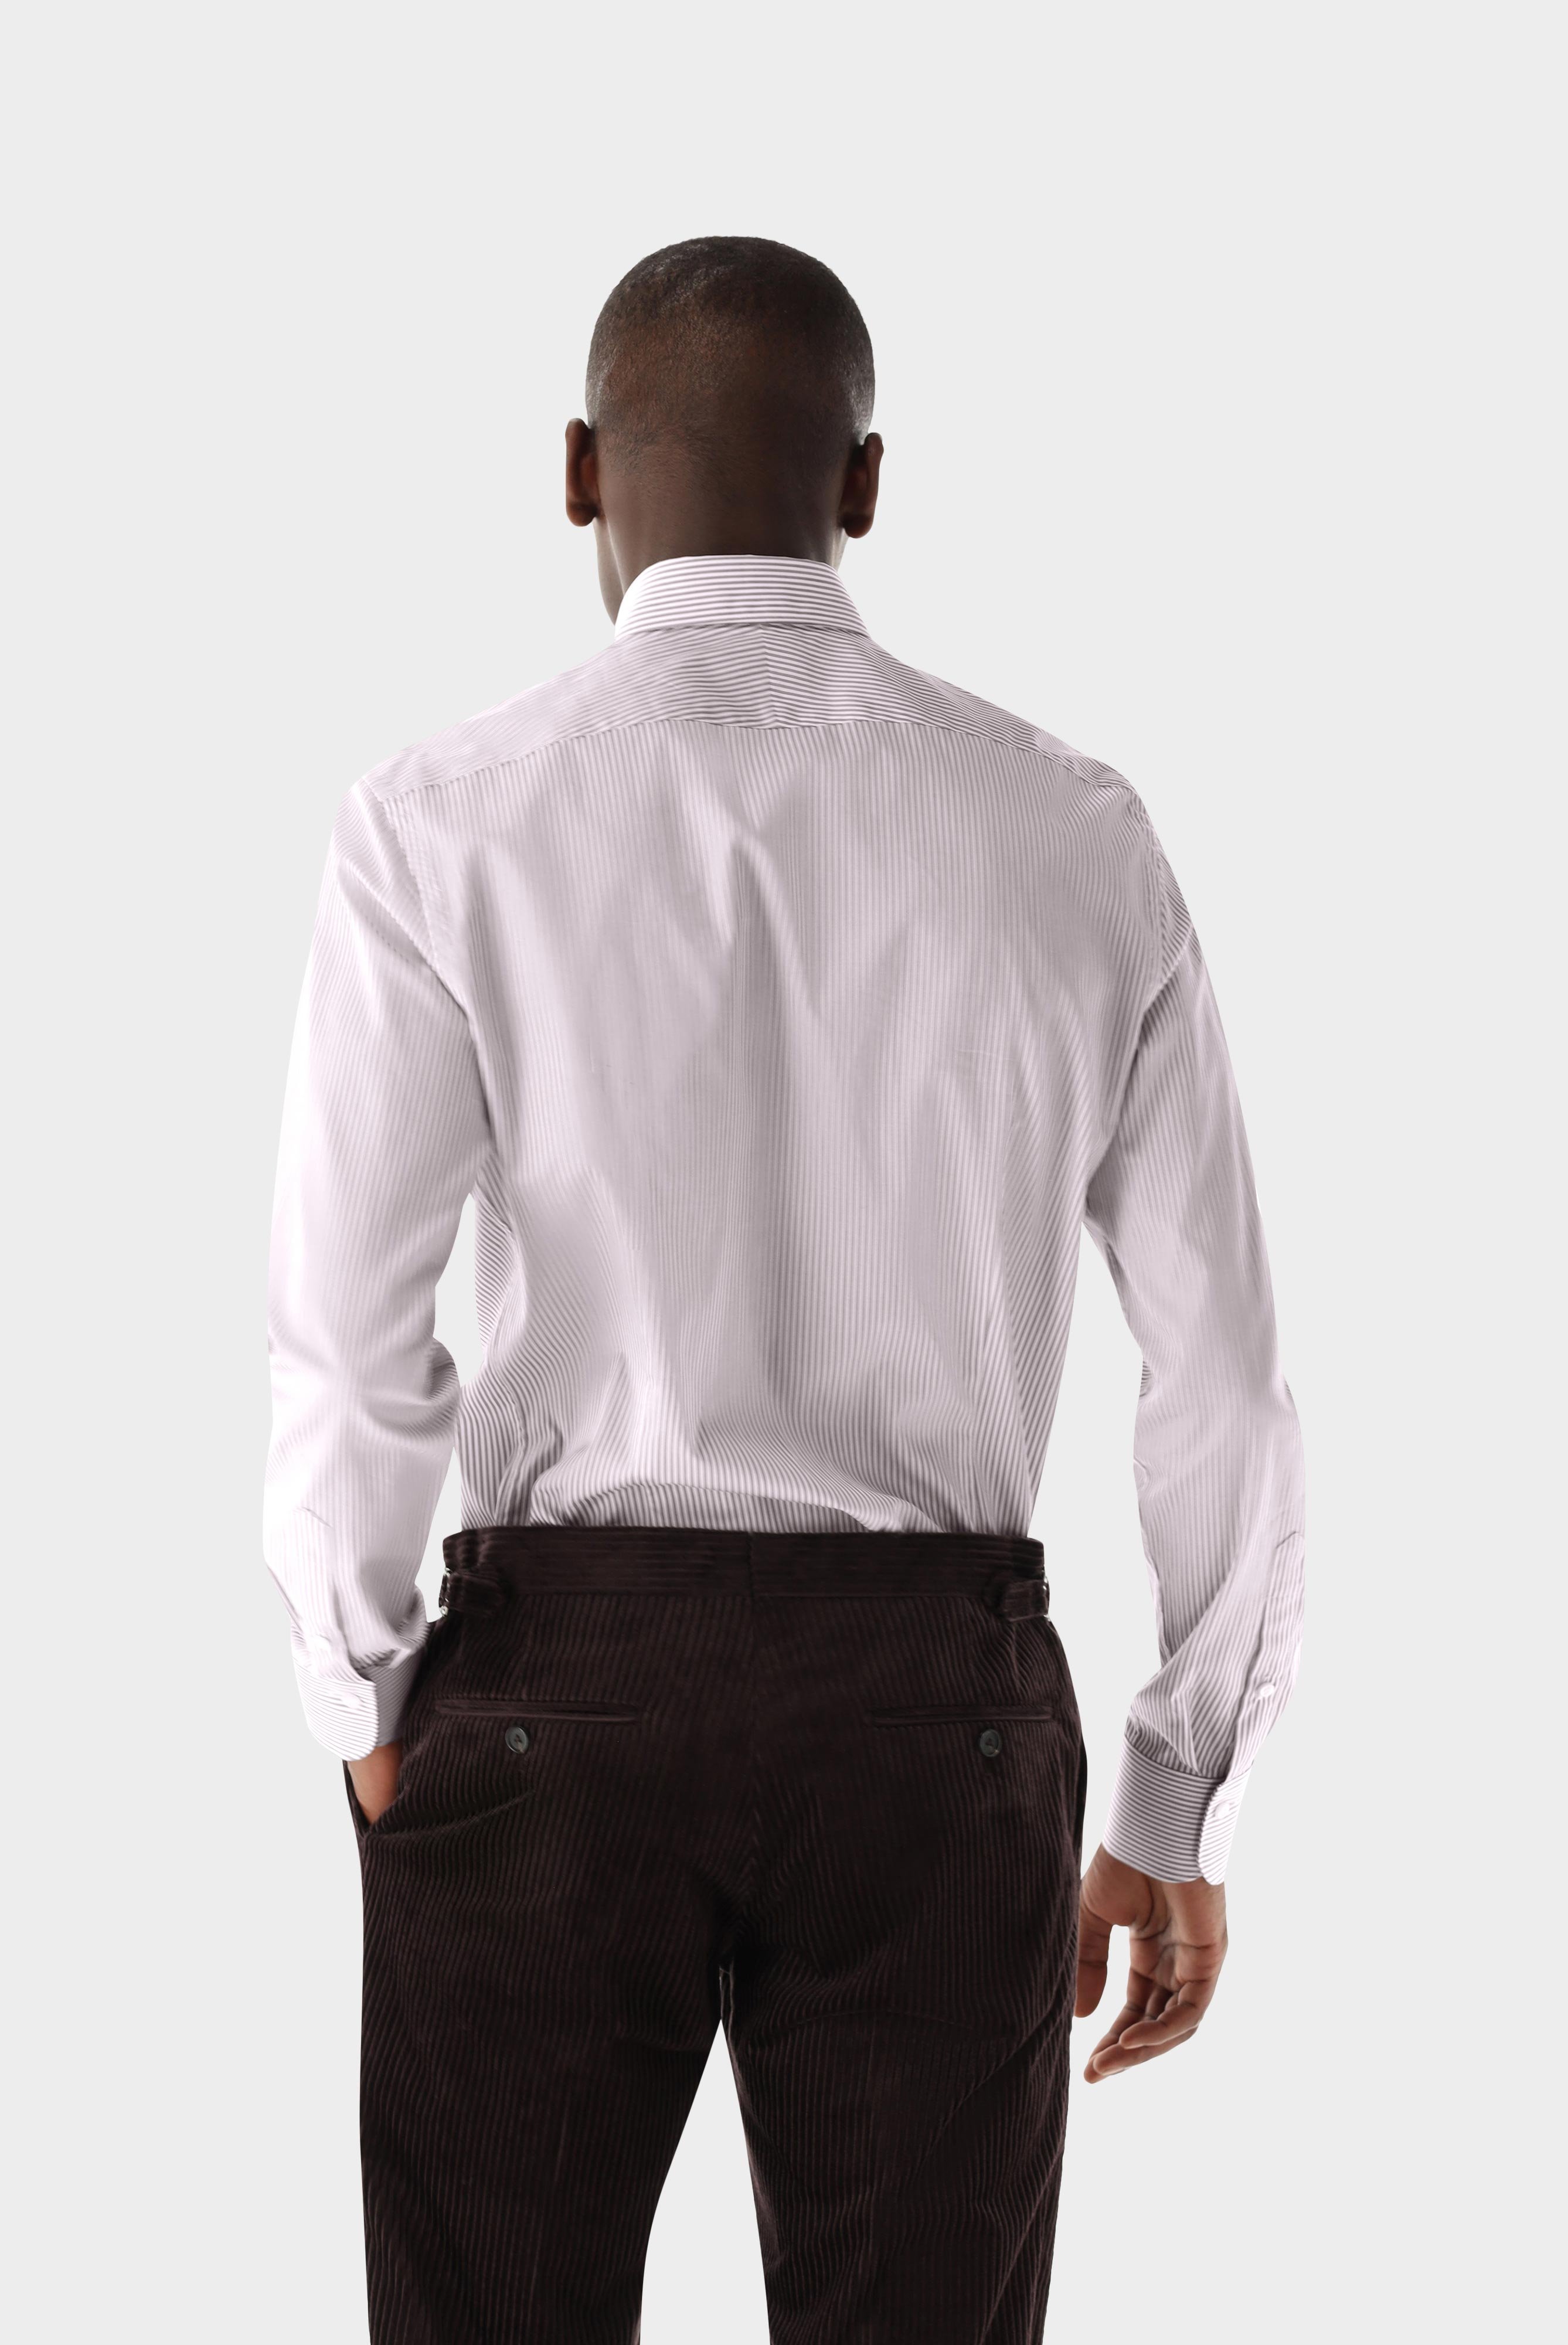 Business Hemden+Twill Hemd mit Streifen Slim Fit+20.2500.NV.161093.620.39